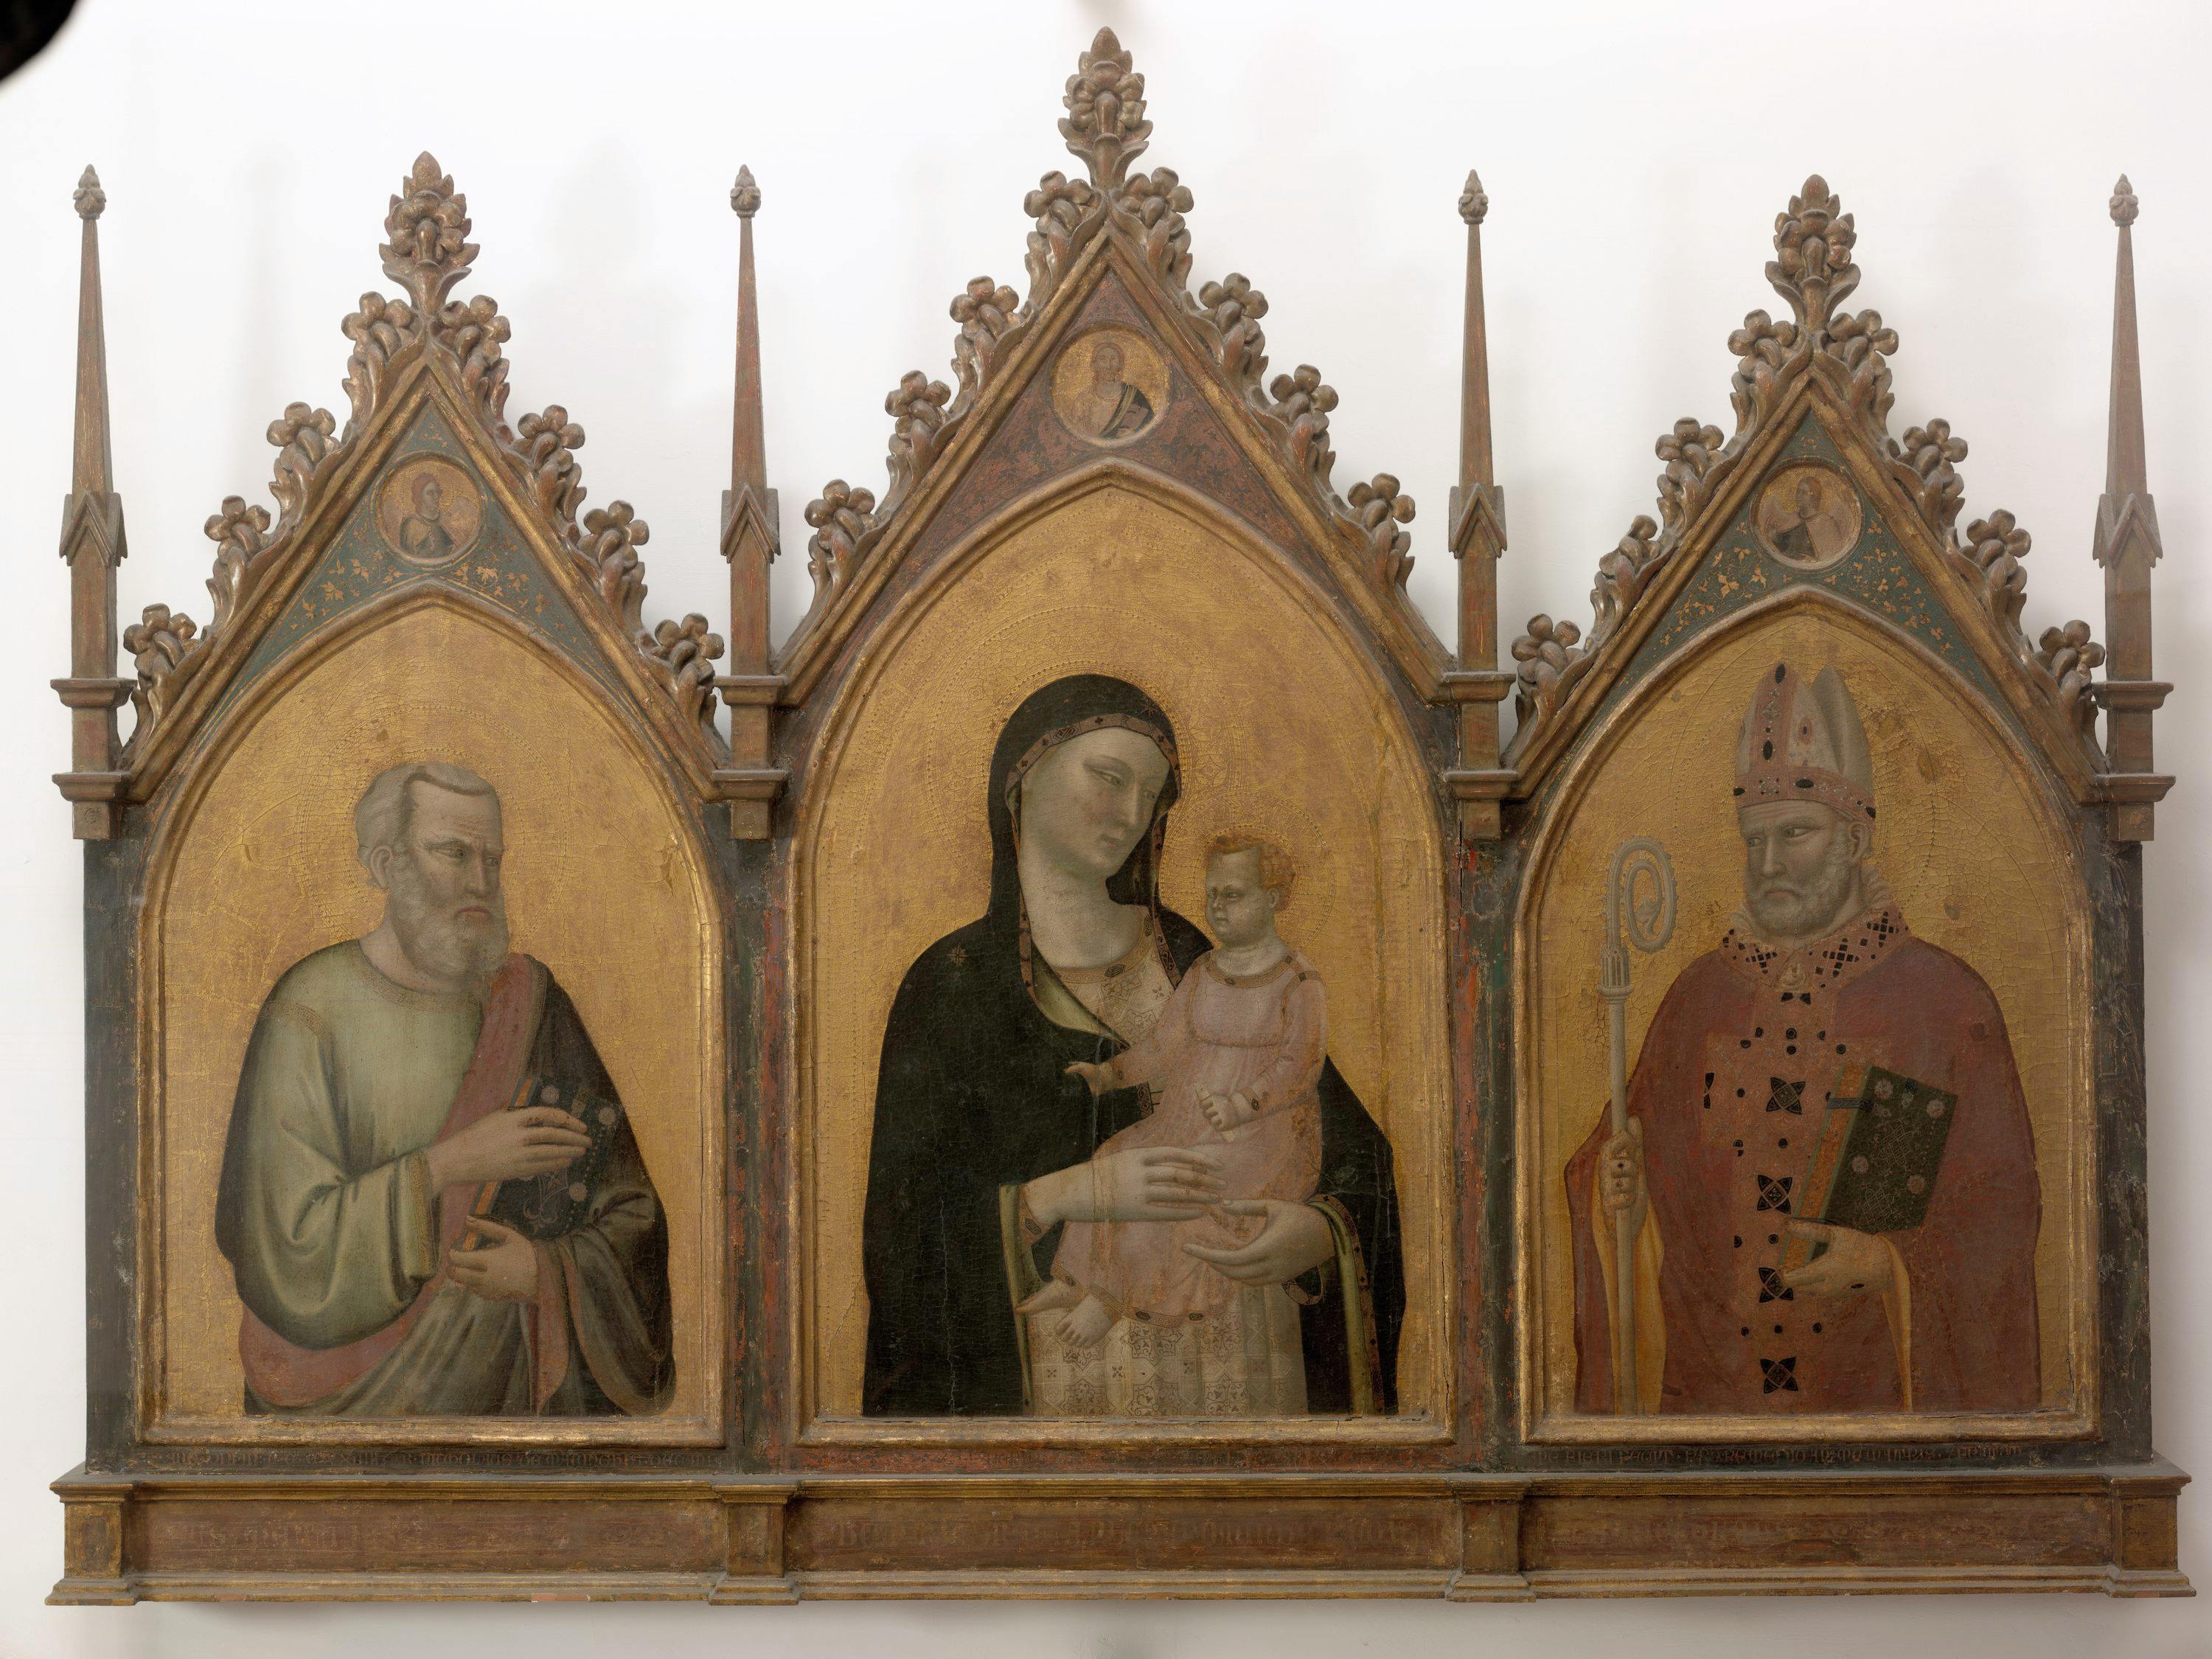 Trittico con la Vergine e il Bambino fra i Santi Matteo e Nicola di Bari